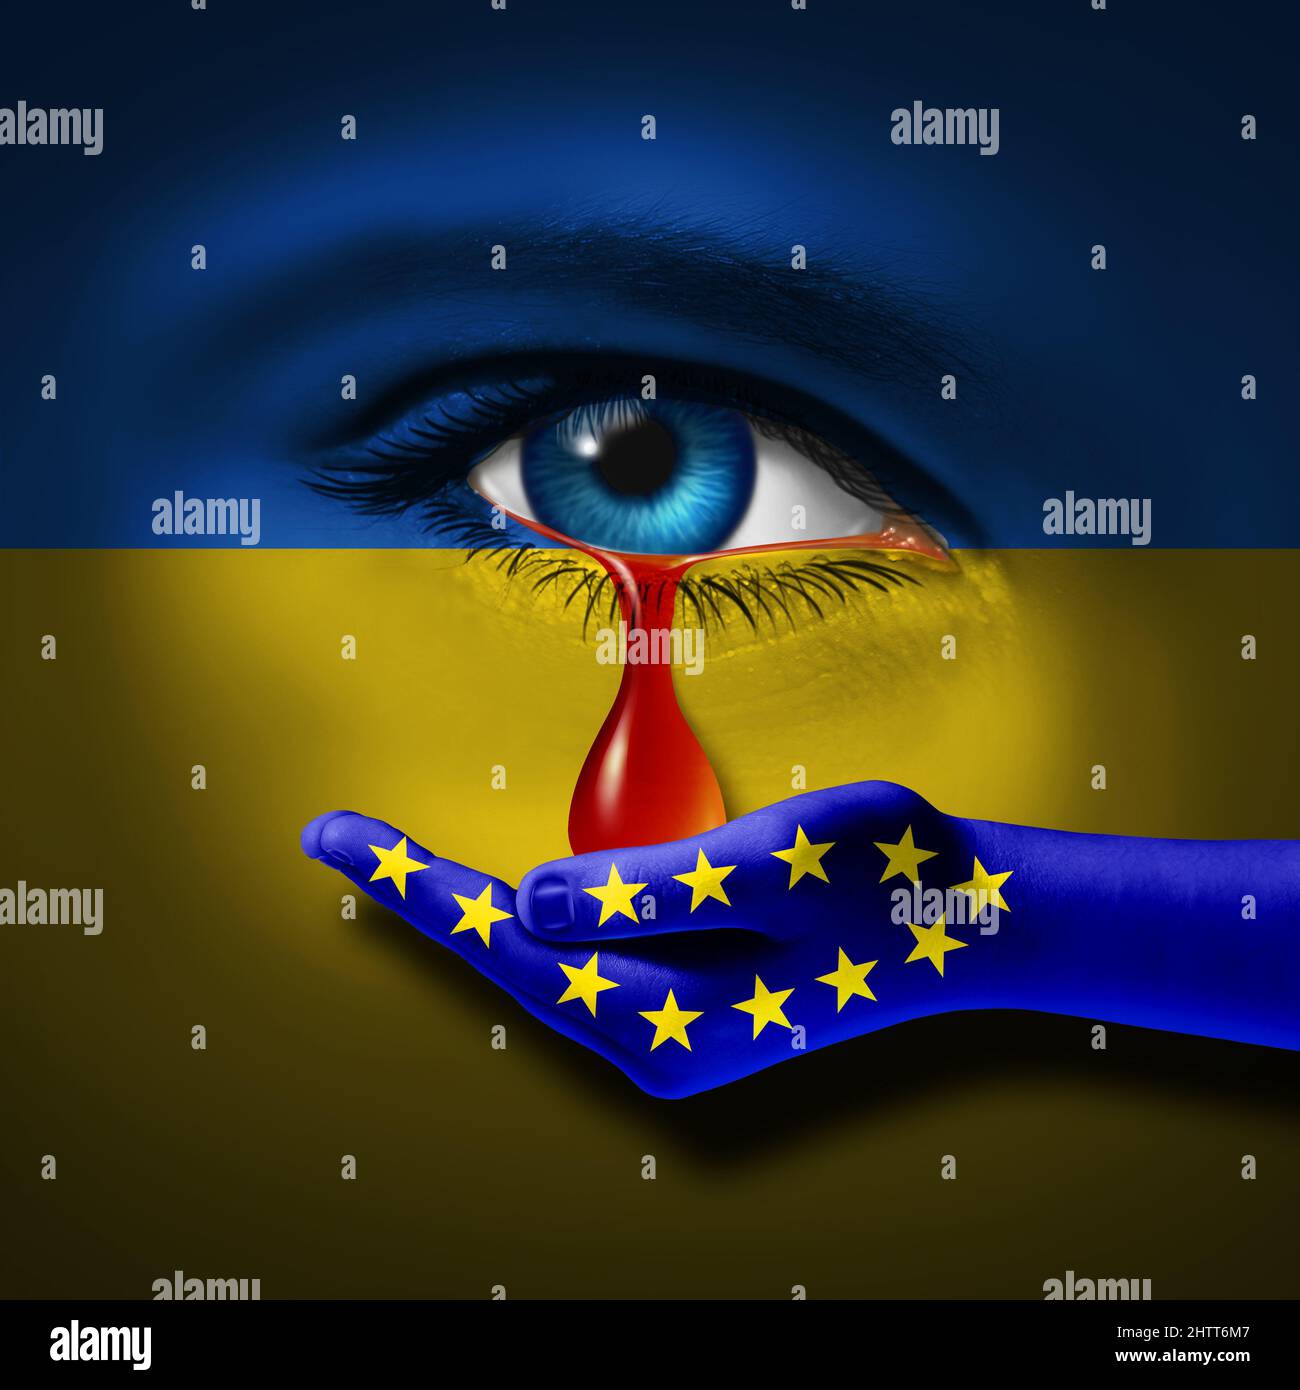 Europa l'Ucraina sostiene la tragedia Ucraina e la crisi di pace come un triste conflitto geopolitico tra l'Ucraina e la Russia come europeo. Foto Stock